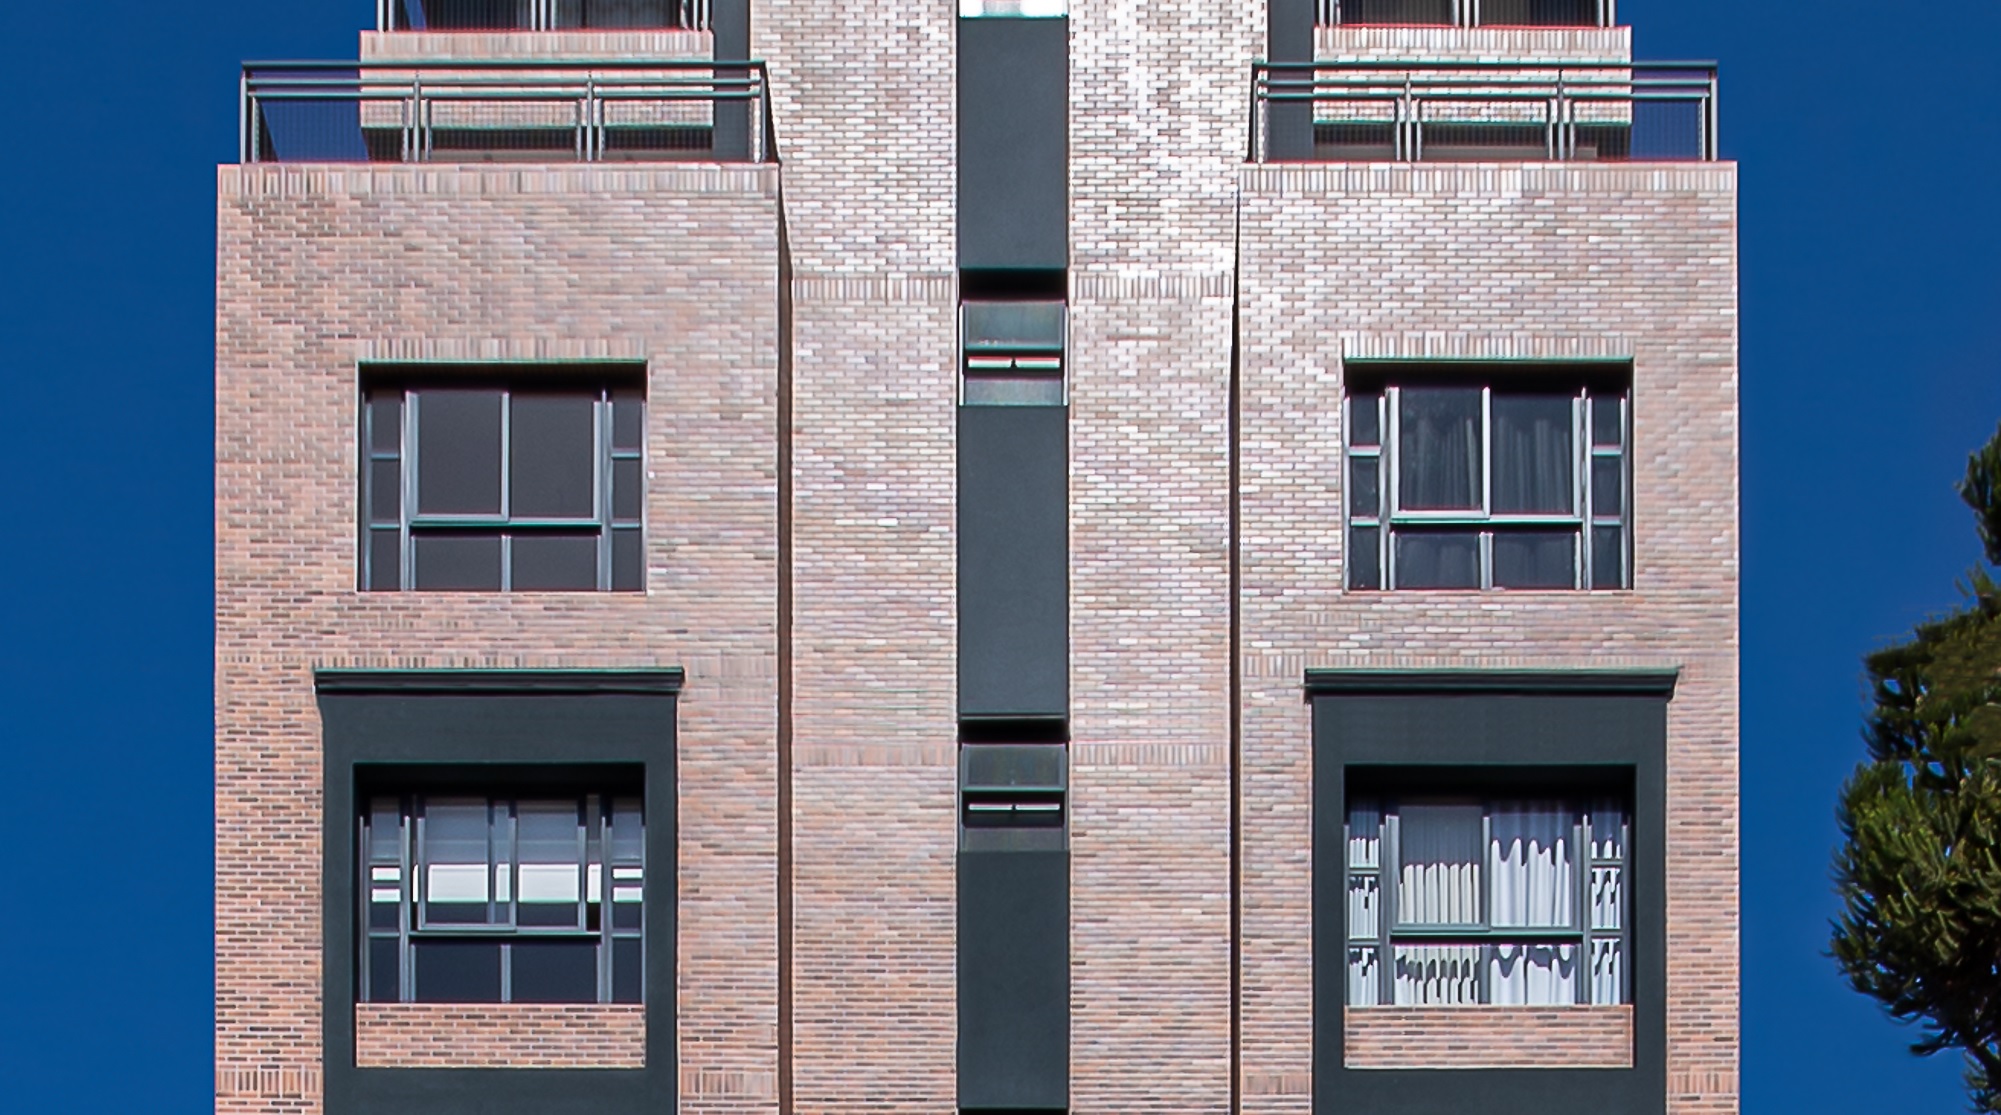 Aprende a utilizar revestimiento cerámico en fachadas de edificios y viviendas, destacados. Fotos: Divulgación/Strufaldi.